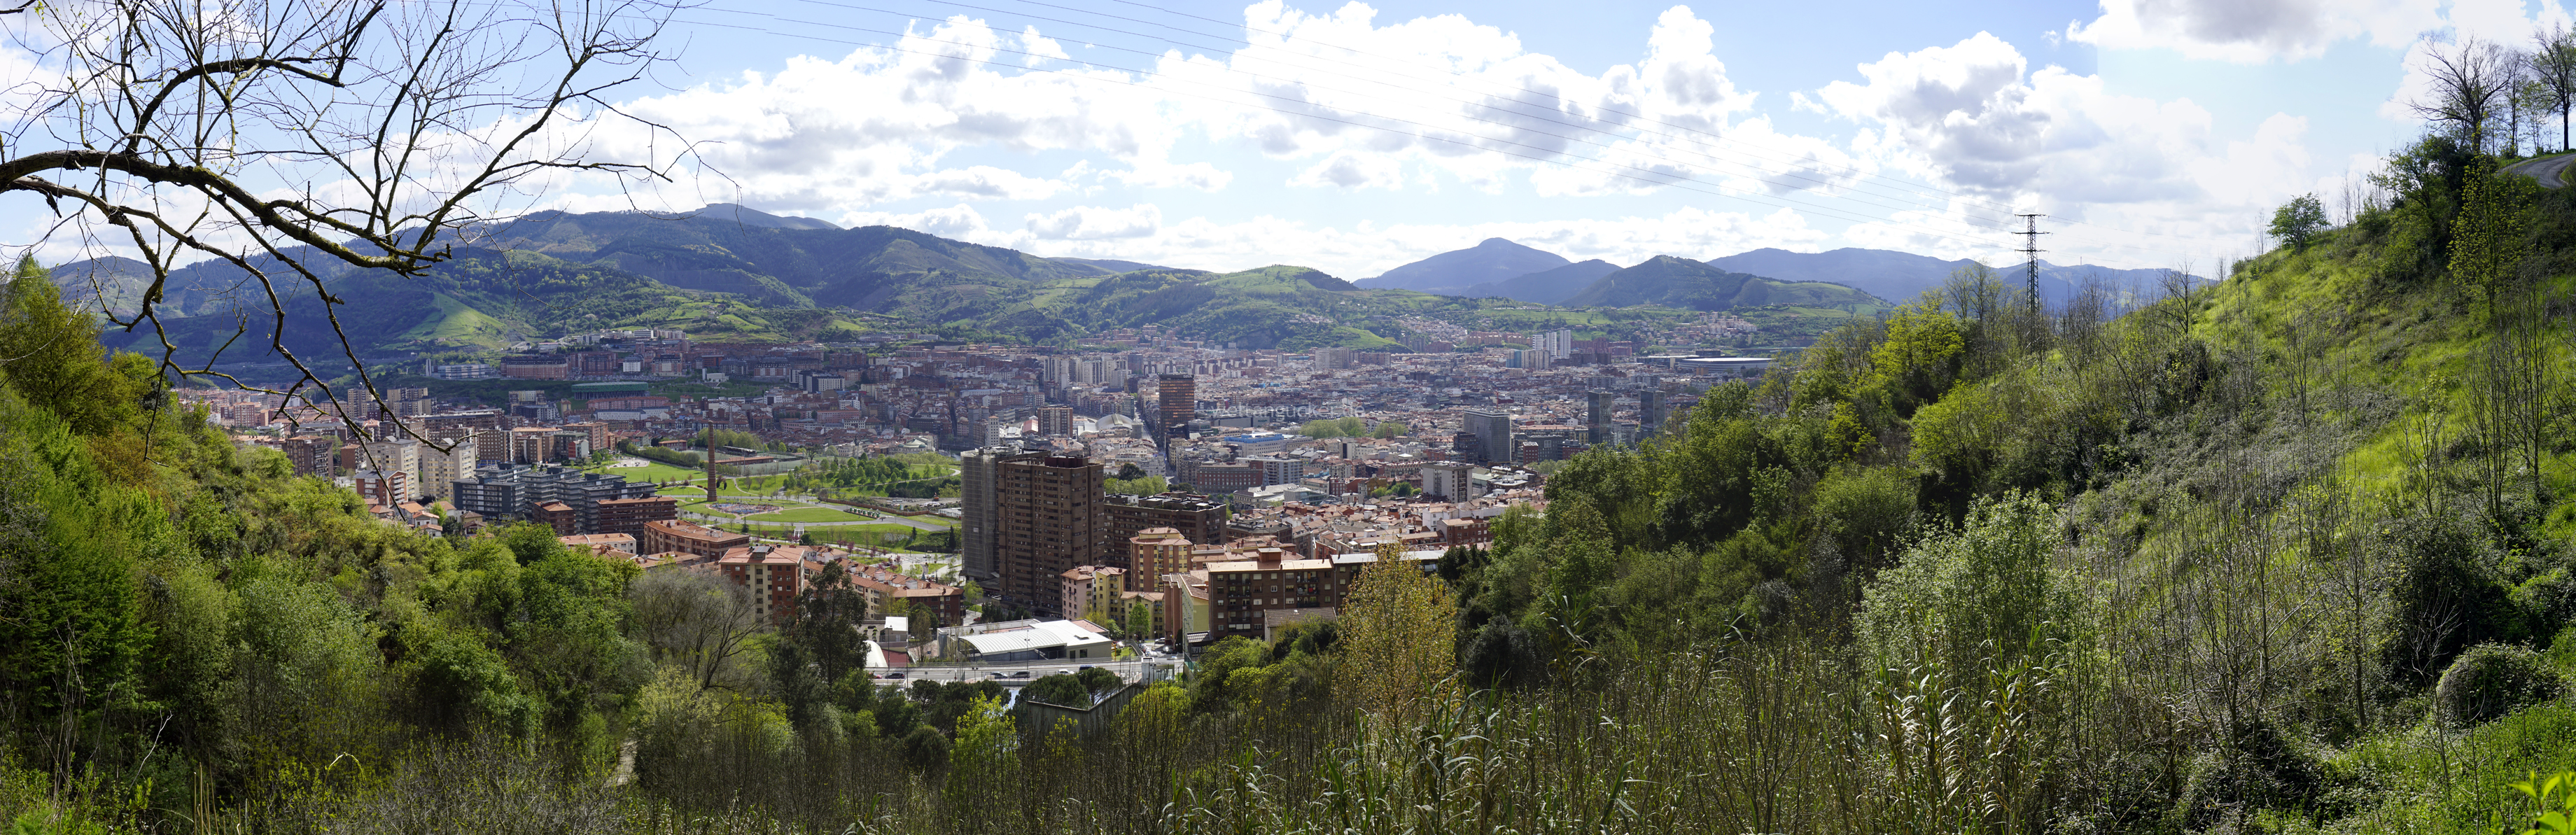 18/18 - Blick auf Bilbao (Baskenland, Spanien)